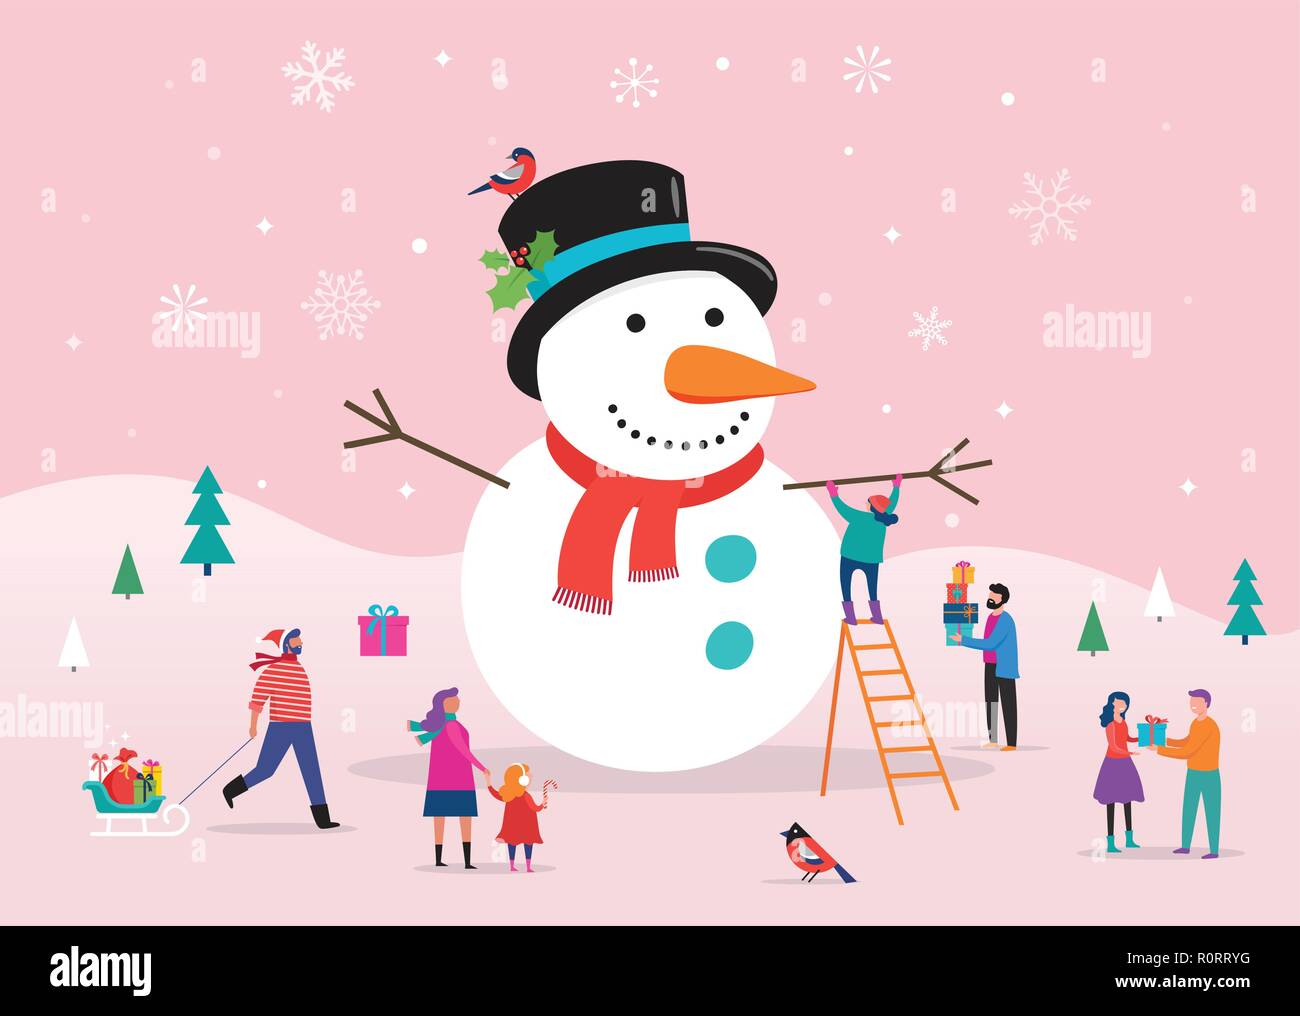 Merry Christmas card, sfondo, bannner con enormi pupazzi di neve e piccoli, giovani uomini e donne, famiglie avendo divertimento nella neve, sci, snowboard, slittino, pattinaggio su ghiaccio, concetto illustrazione vettoriale Illustrazione Vettoriale